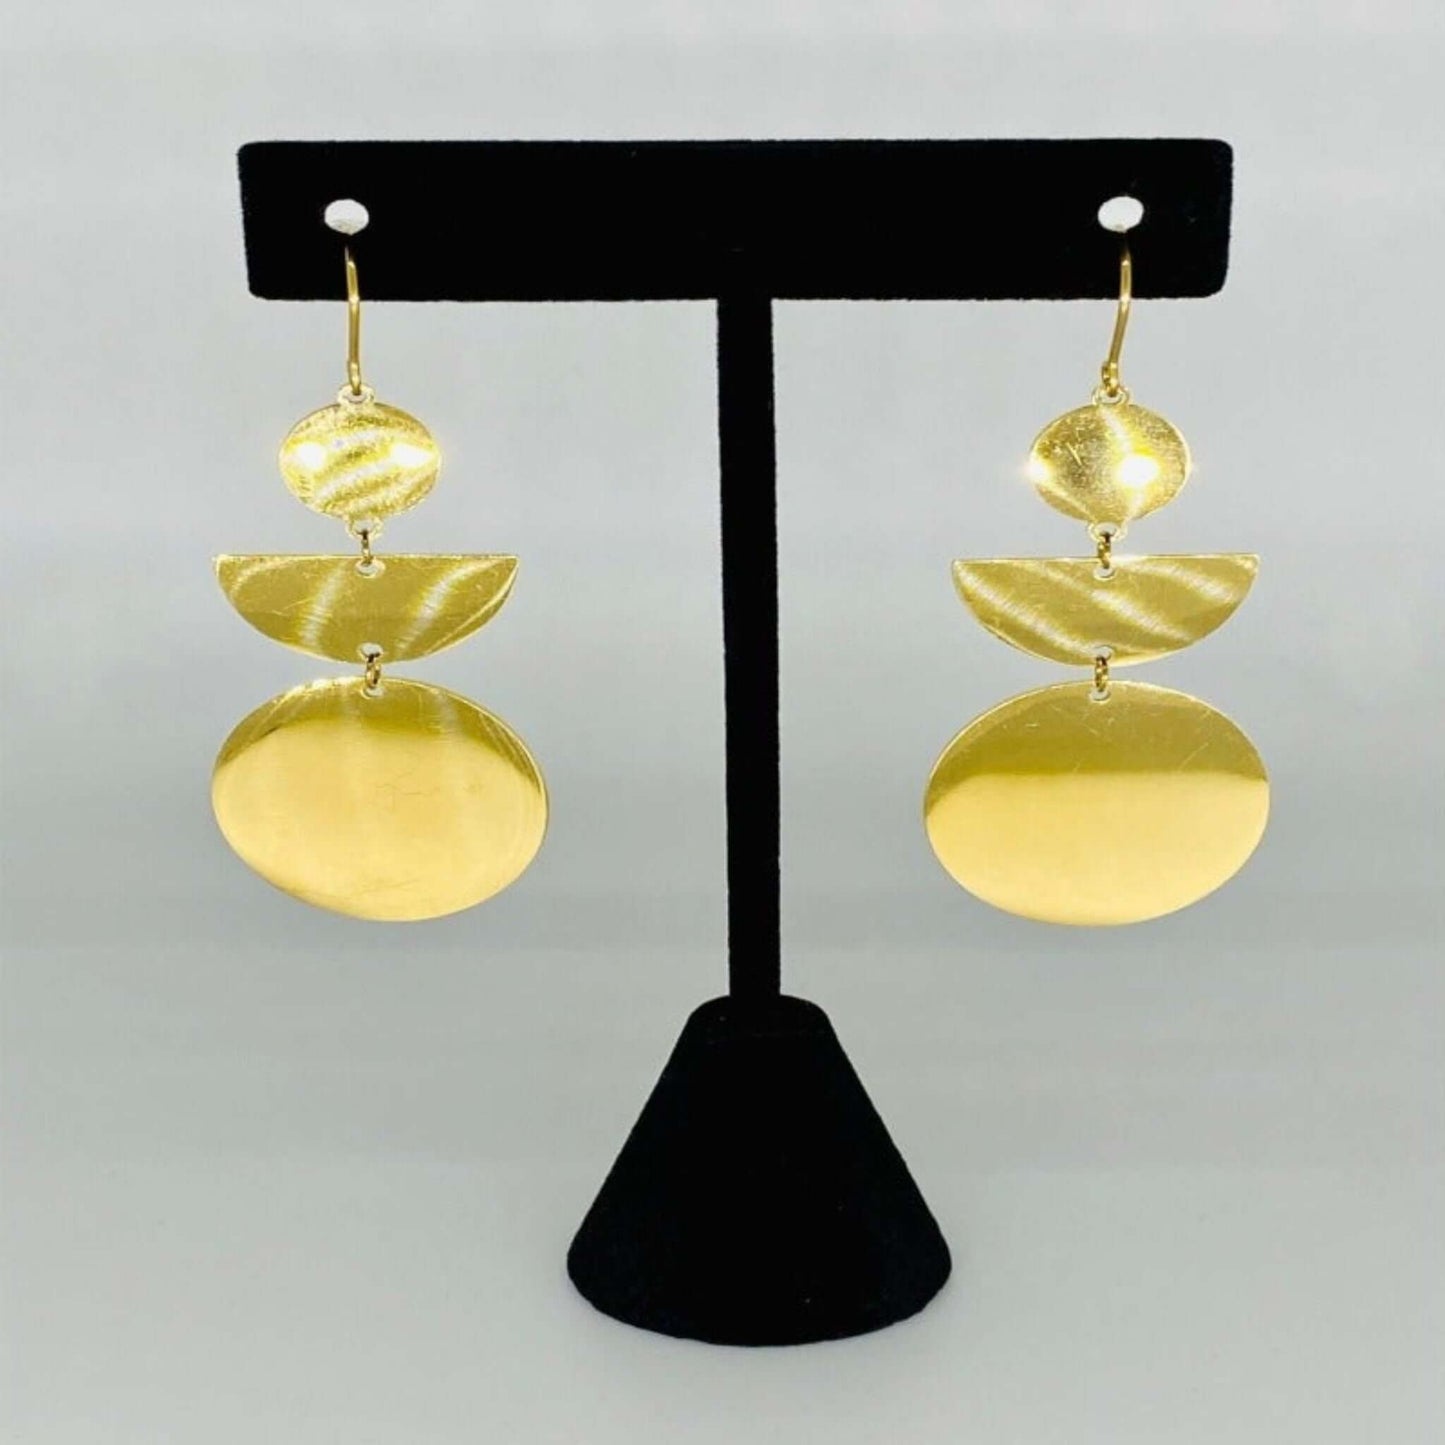 Geometric Stainless Steel Drop Earrings- Gold